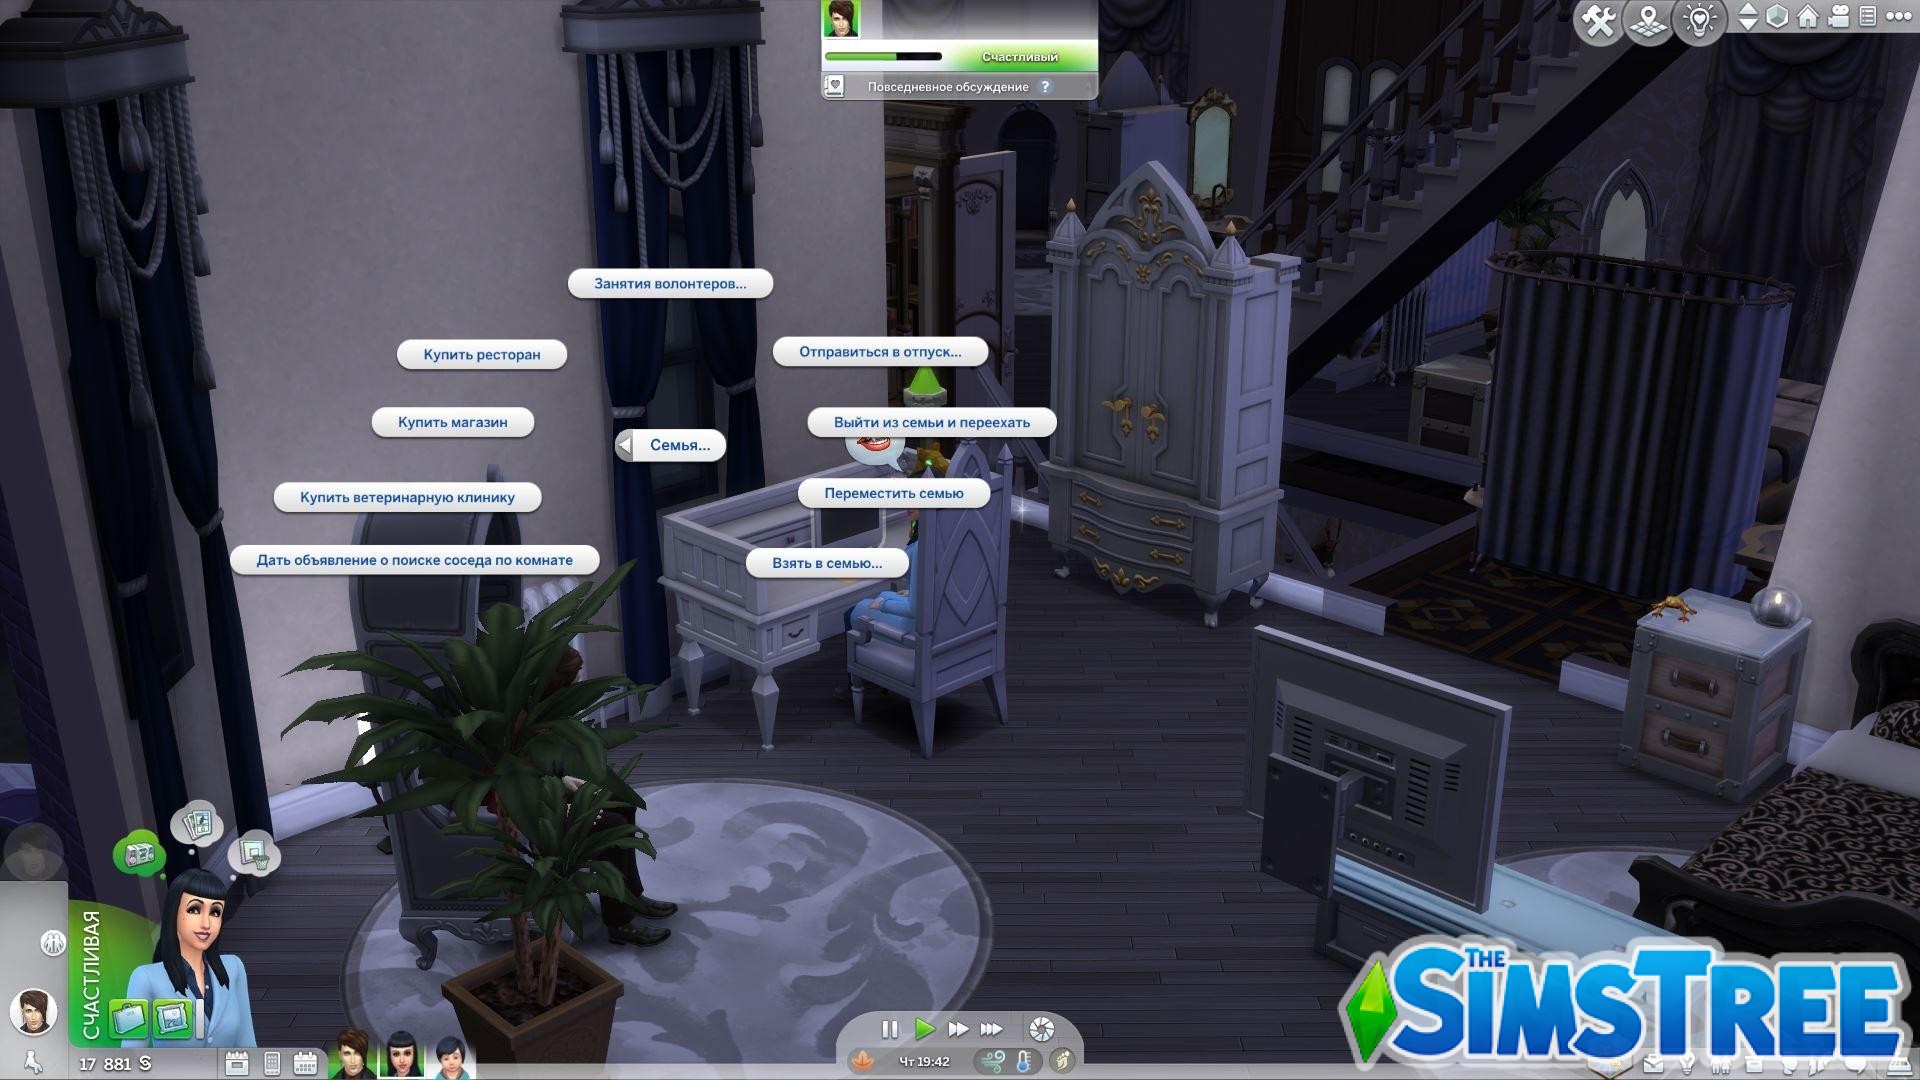 Мод «Новое меню для компьютера» от Andirz для Sims 4